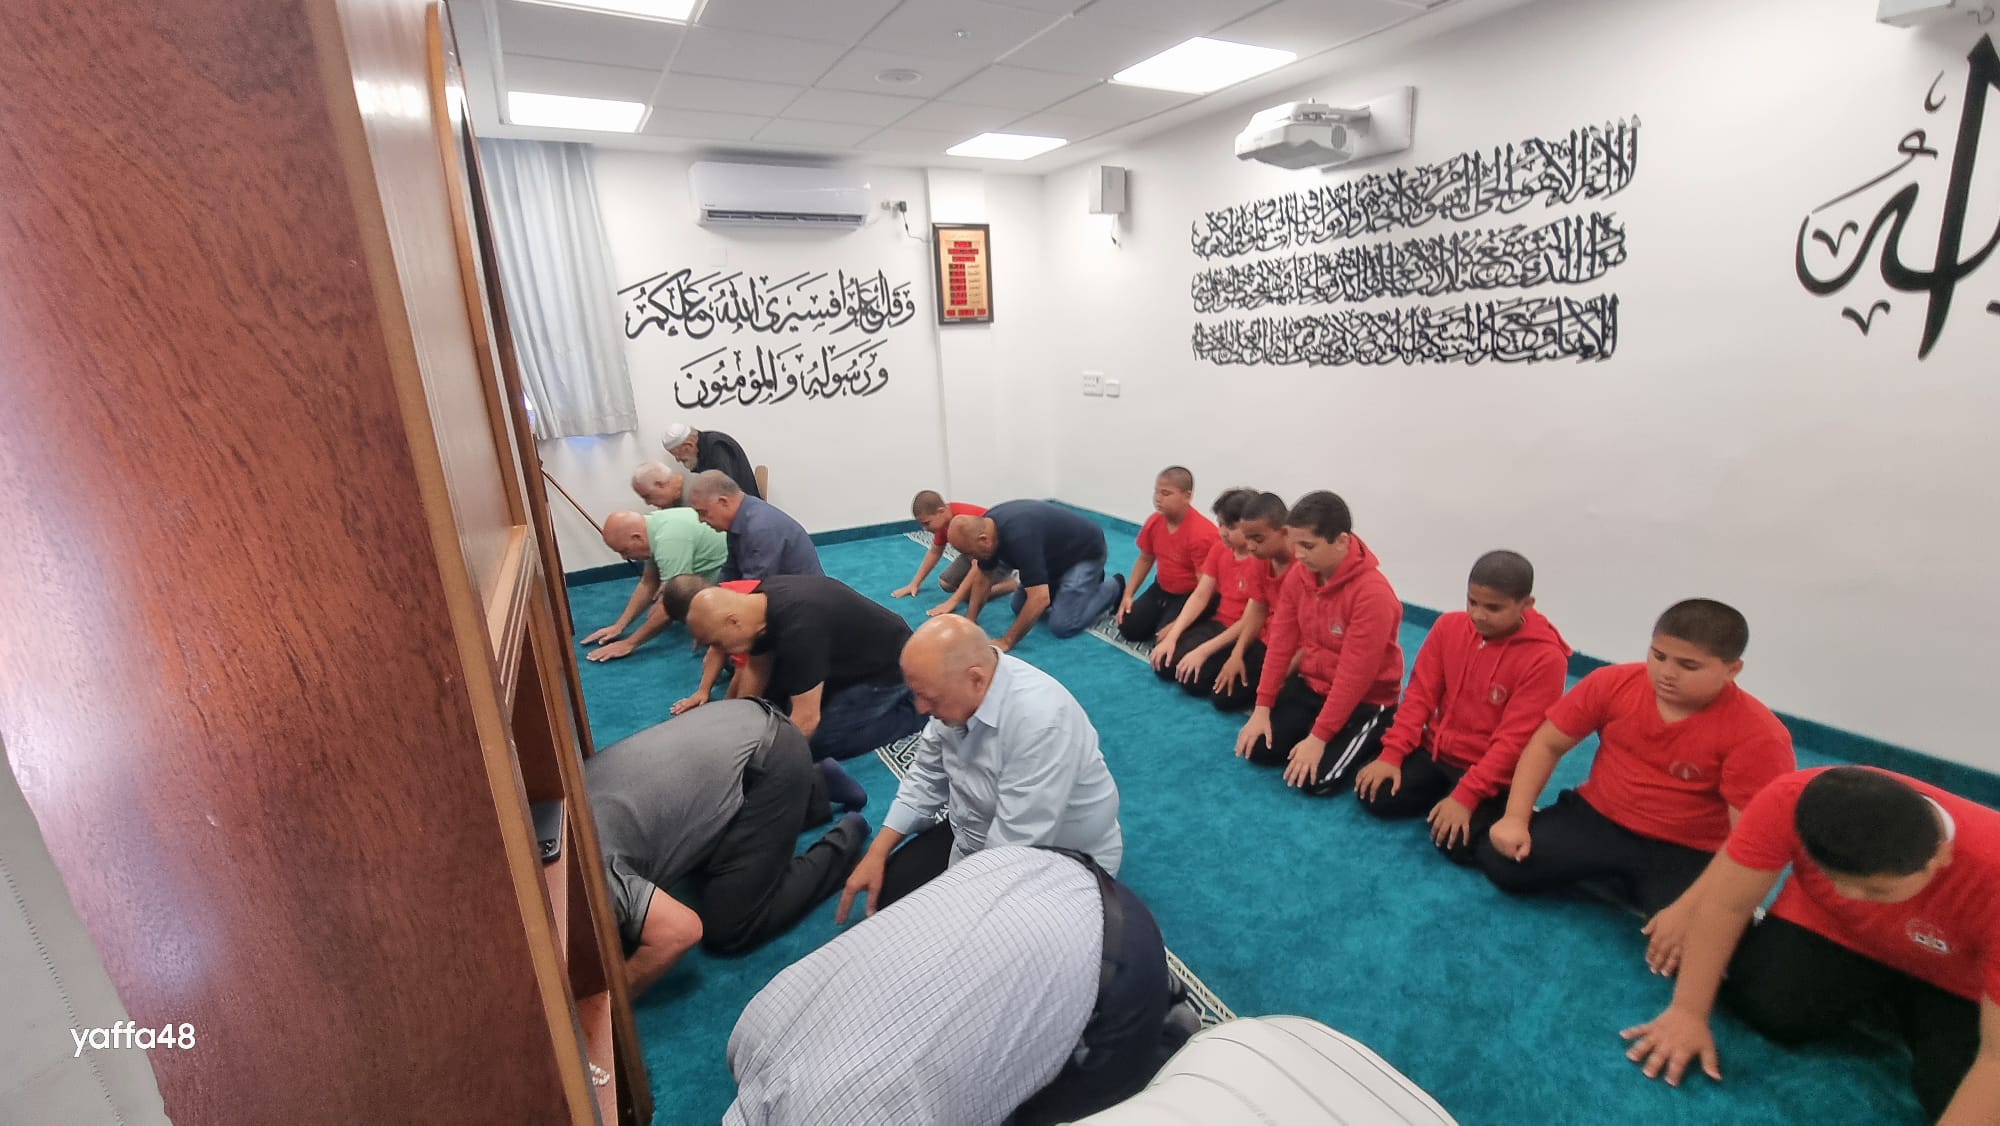  افتتاح مصلى الايمان في مدرسة الأخوة الابتدائية في يافا